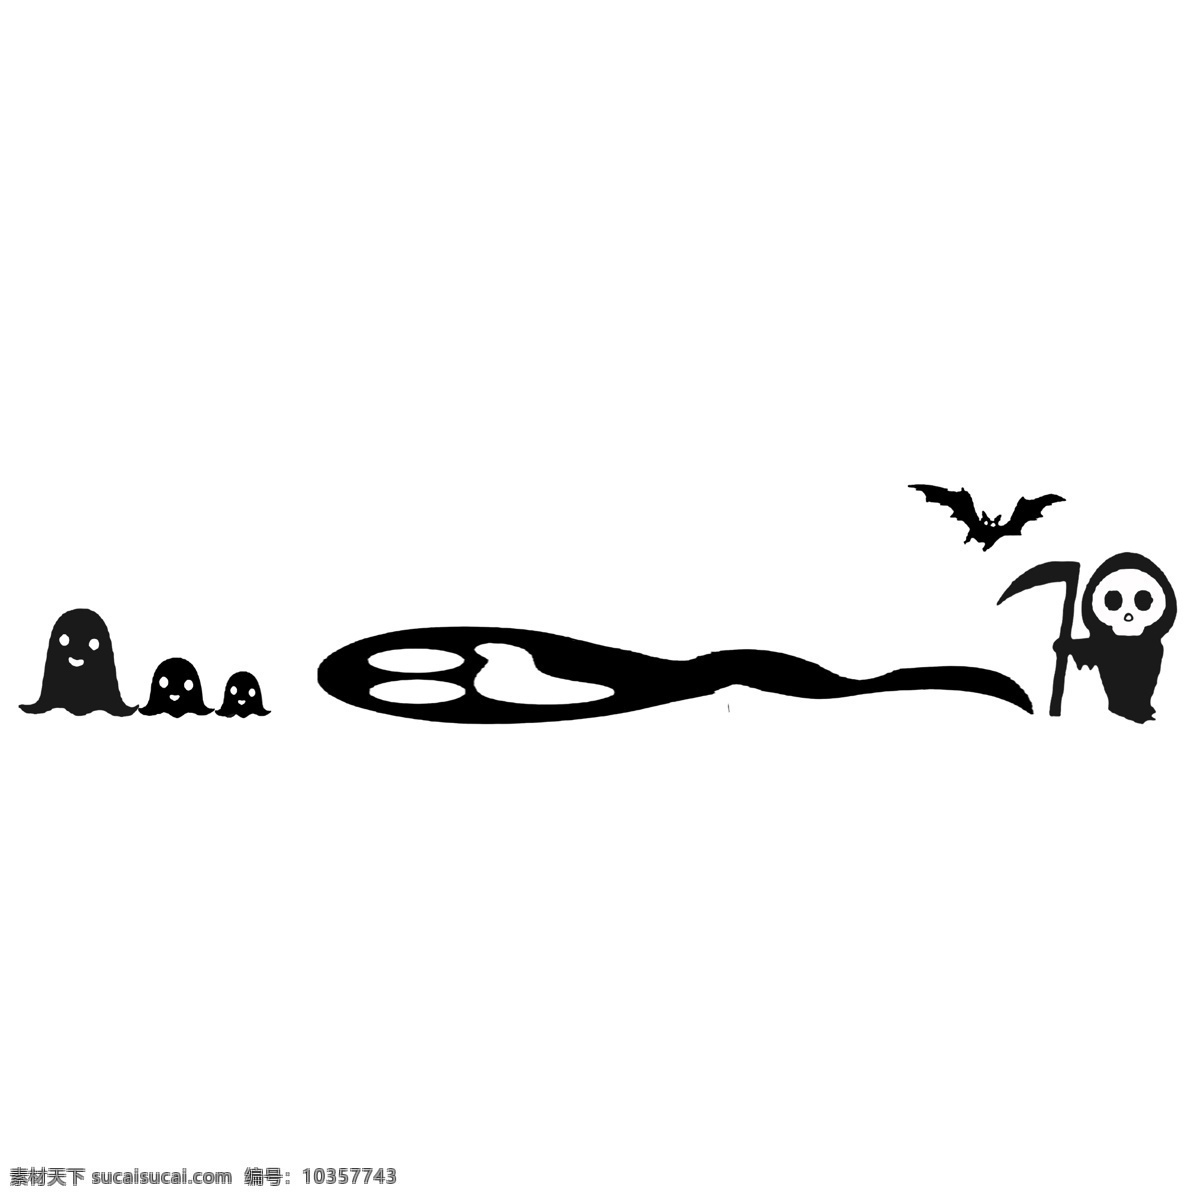 手绘 骷髅 分割线 插画 卡通插画 手绘插画 分割线插画 黑色的骷髅 可怕的骷髅 飞舞的燕子